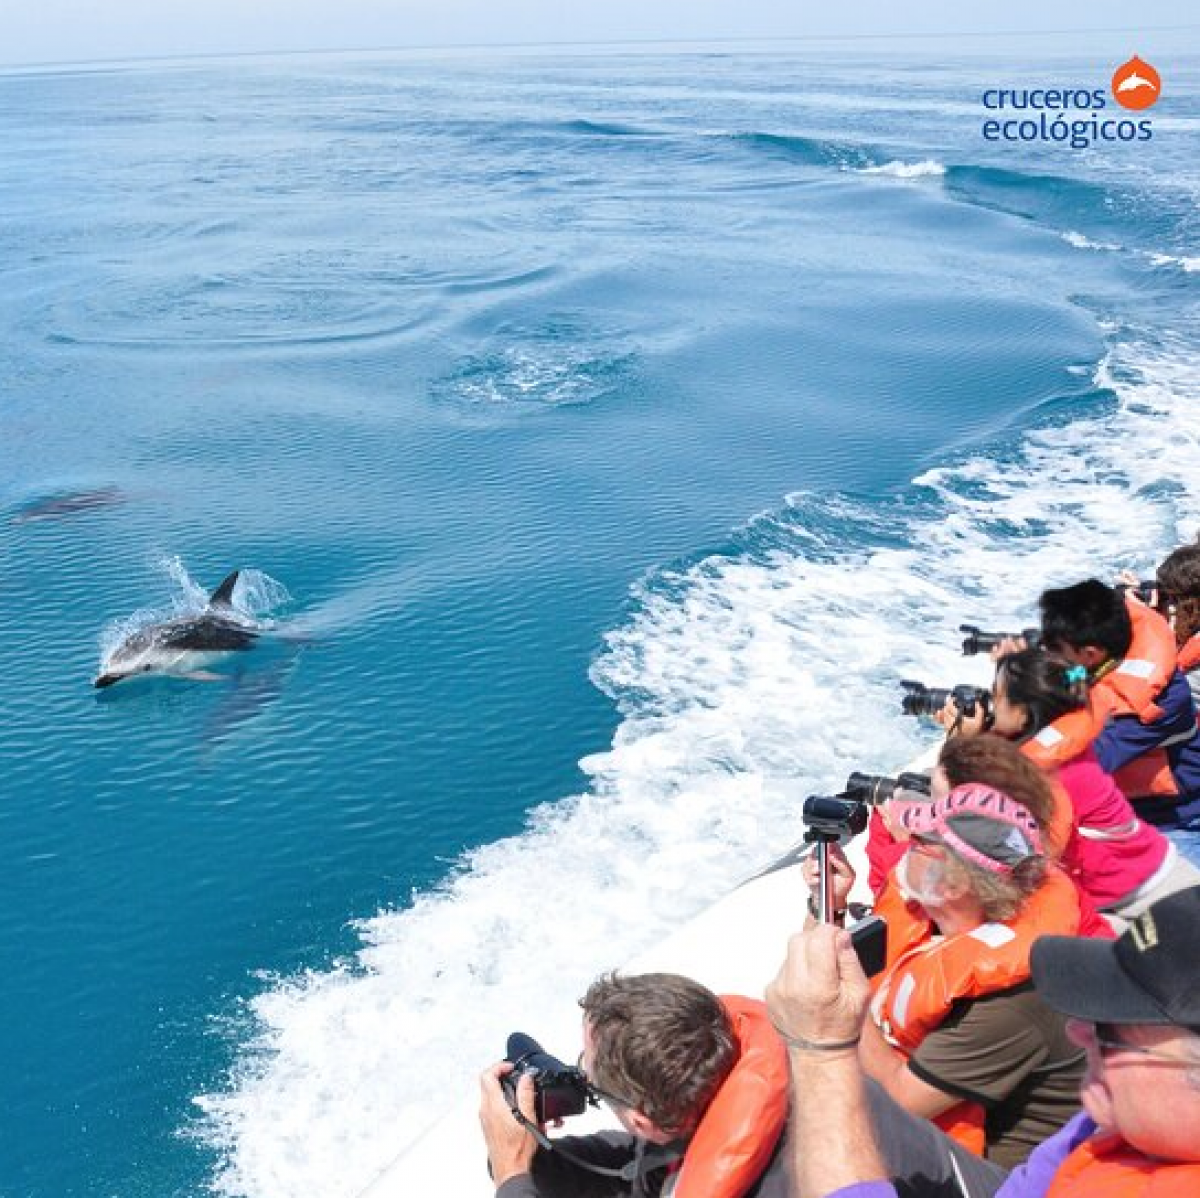 Ở Puerto Mandryn, du khách có thể ngắm những chú cá heo từ thuyền ở khoảng cách chỉ vài mét